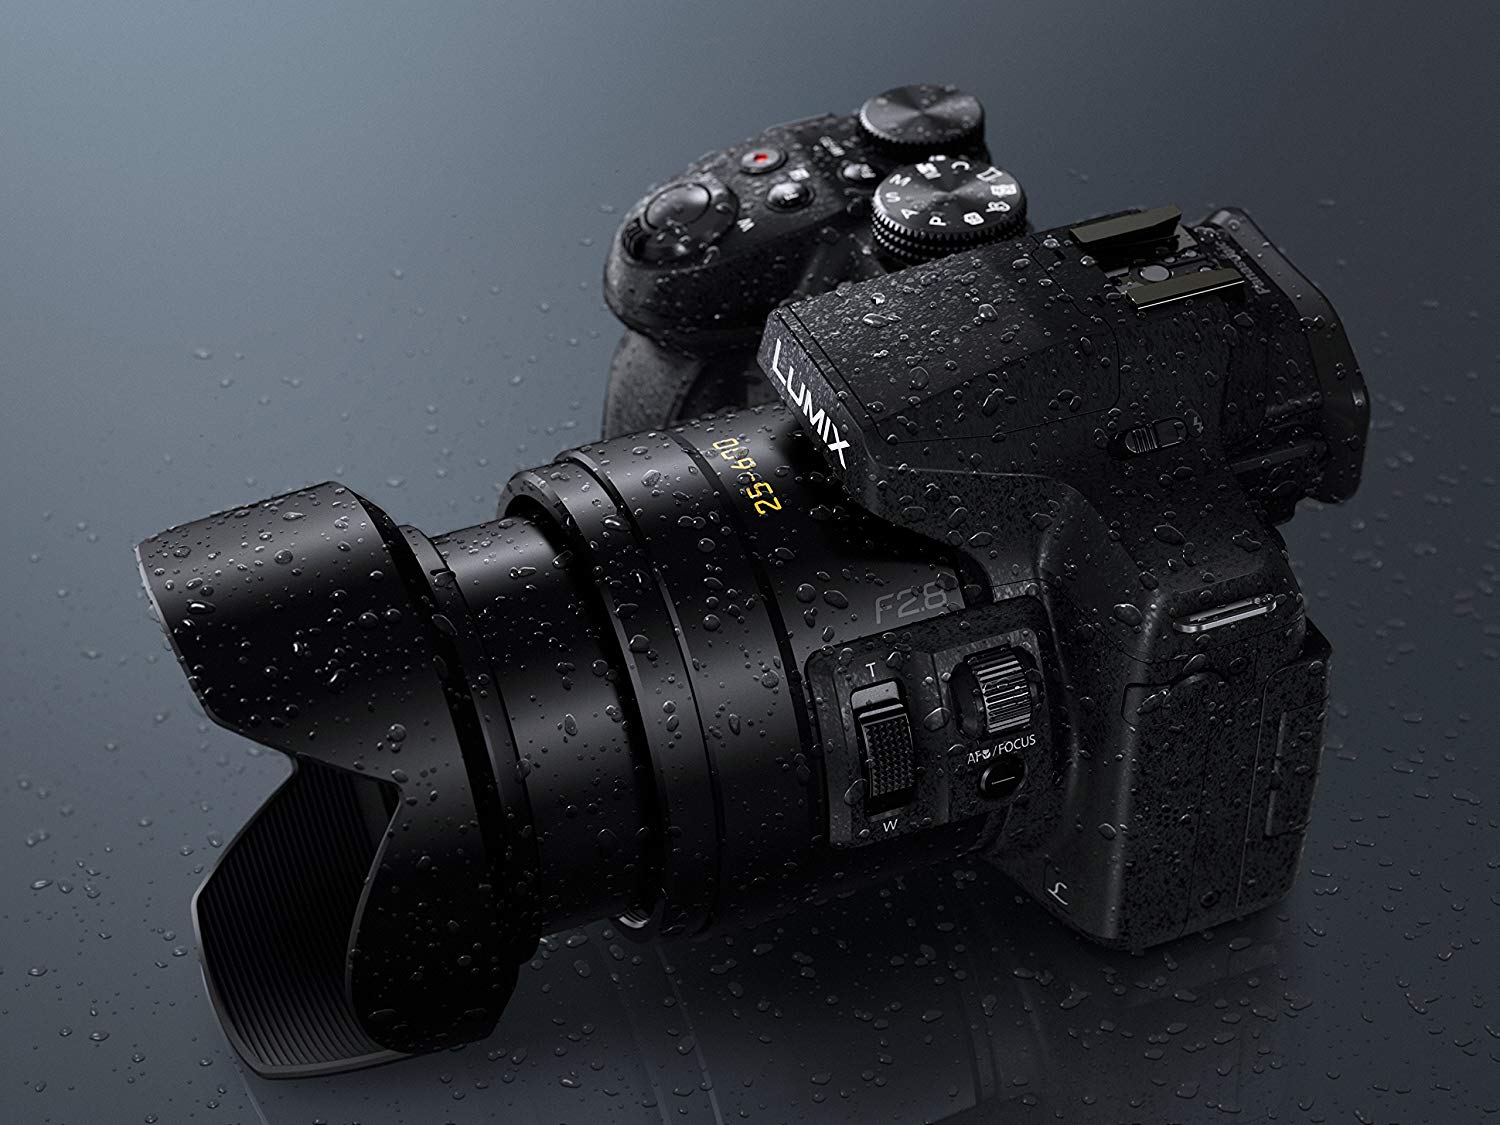 Meilleur appareil photo bridge N°5 : Le Panasonic Lumix FZ300 / FZ330